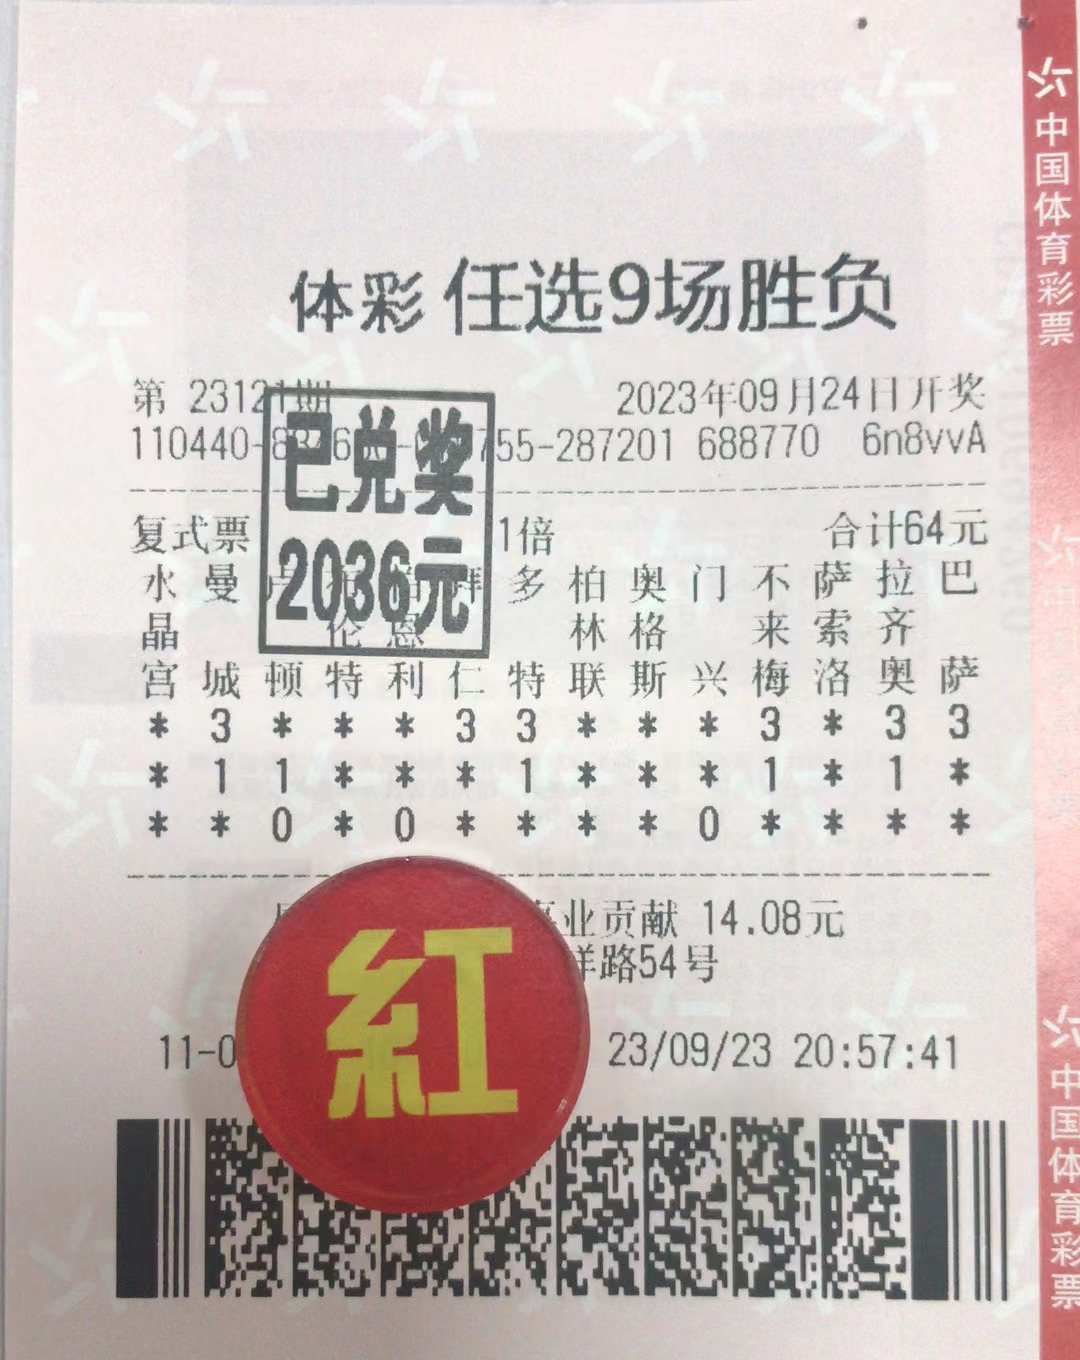 9月24日任选9场胜负收米2036元-北单实体店